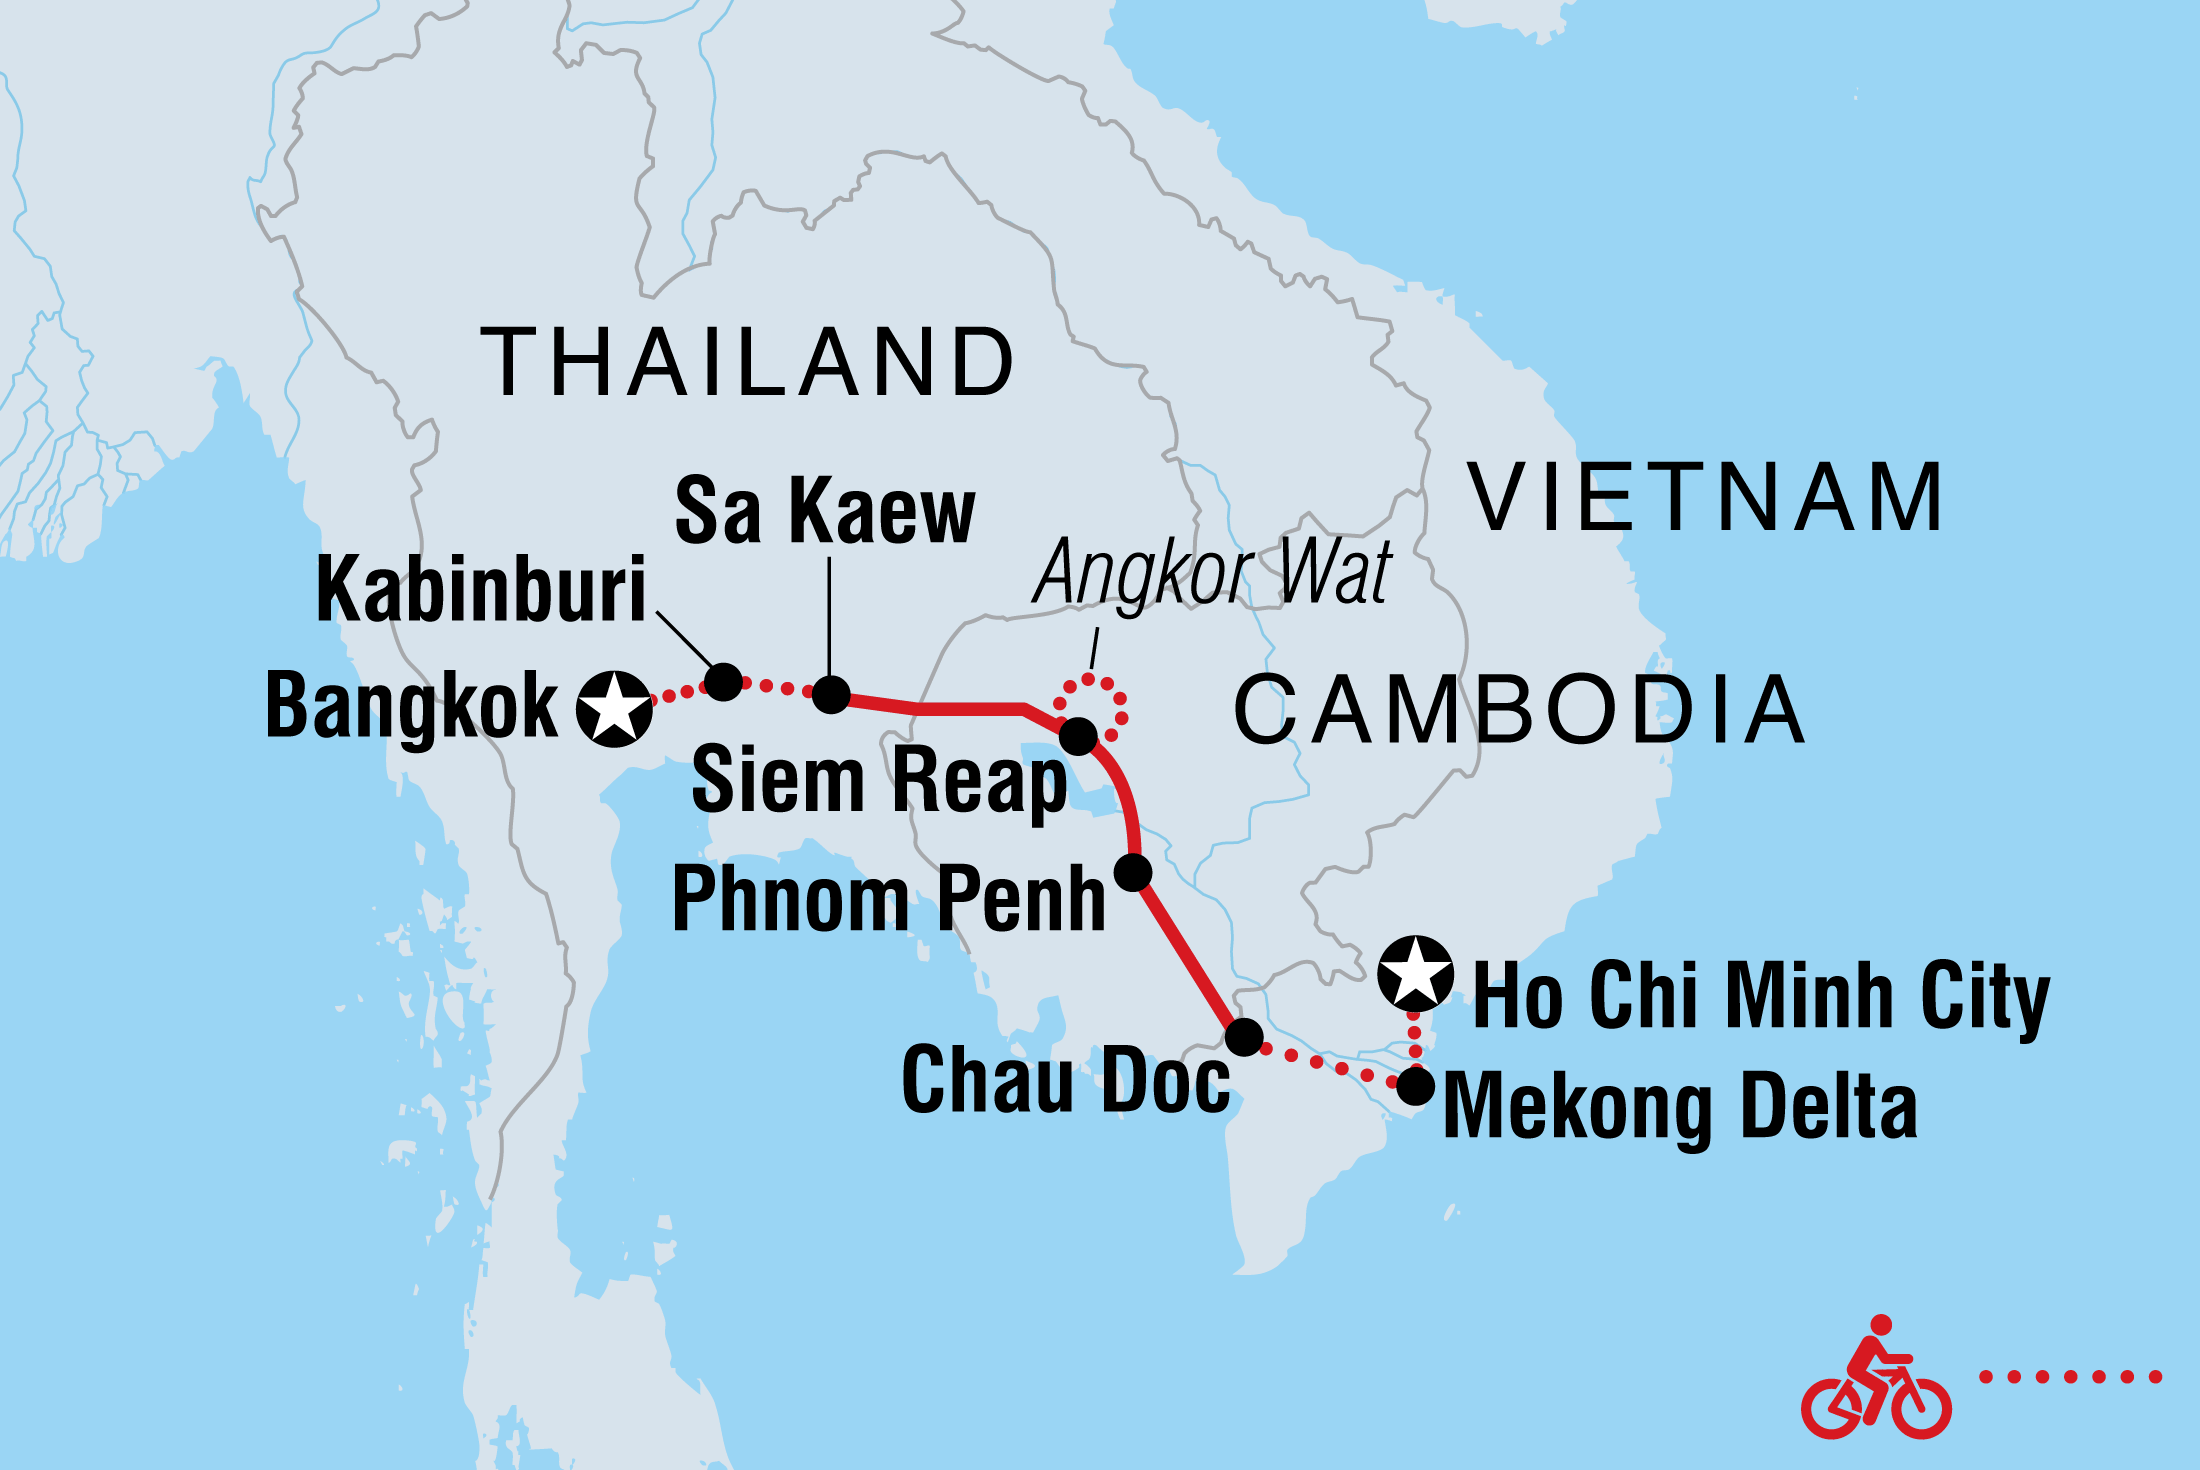 thailand to vietnam trip